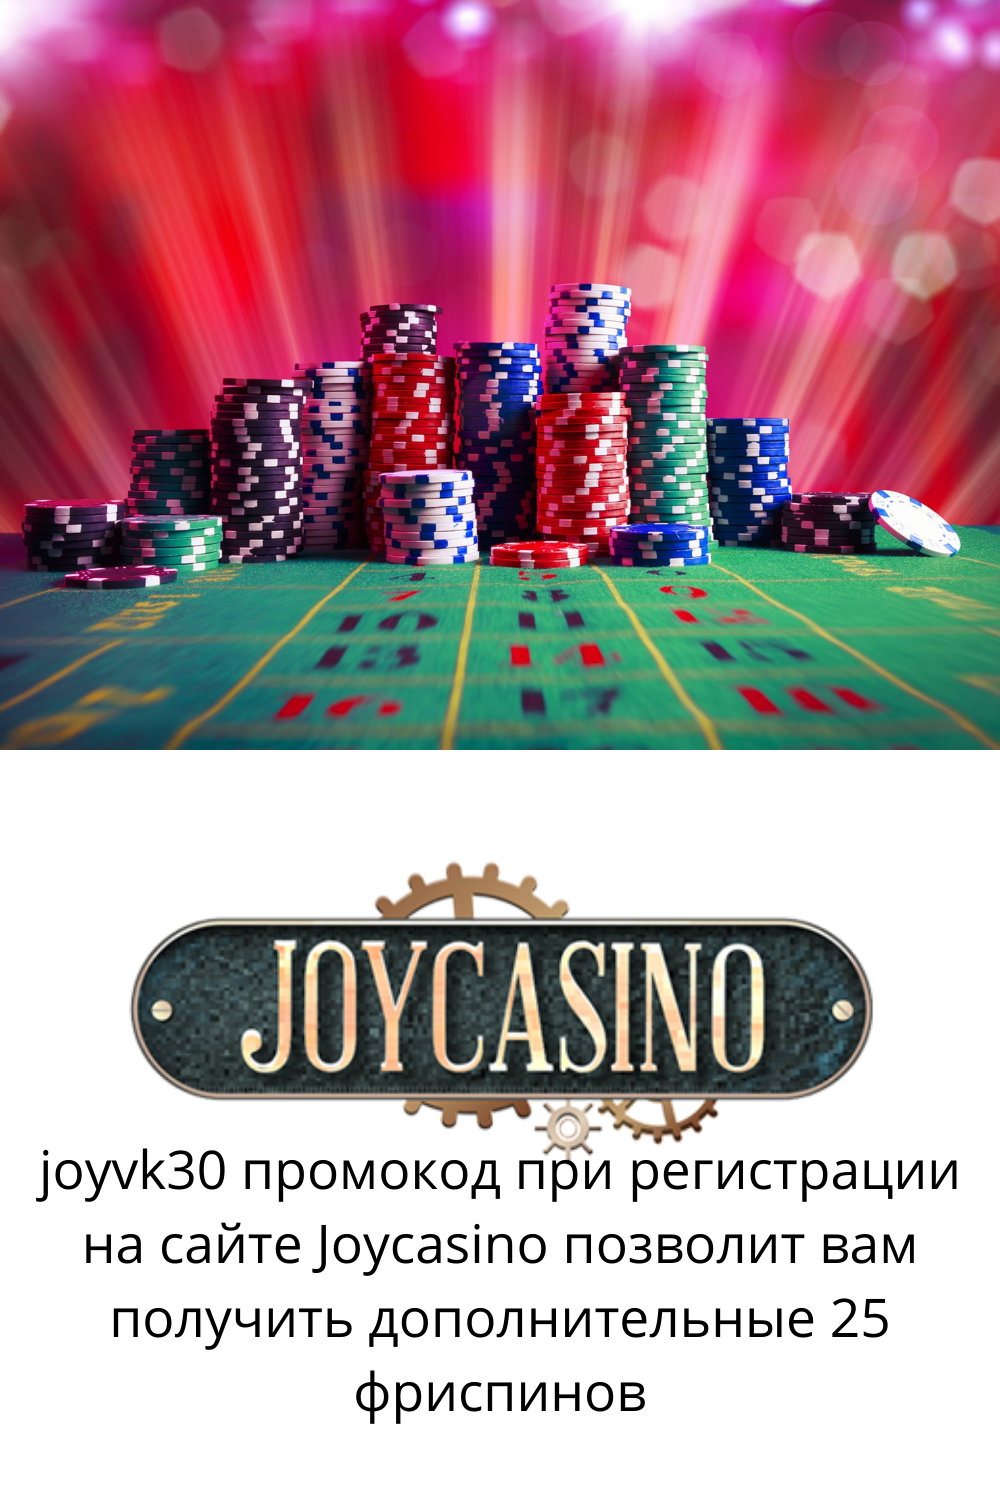 Joycasino промокод сайт joycasino. Джойказино казино зеркало. Joycasino зеркало сайта.